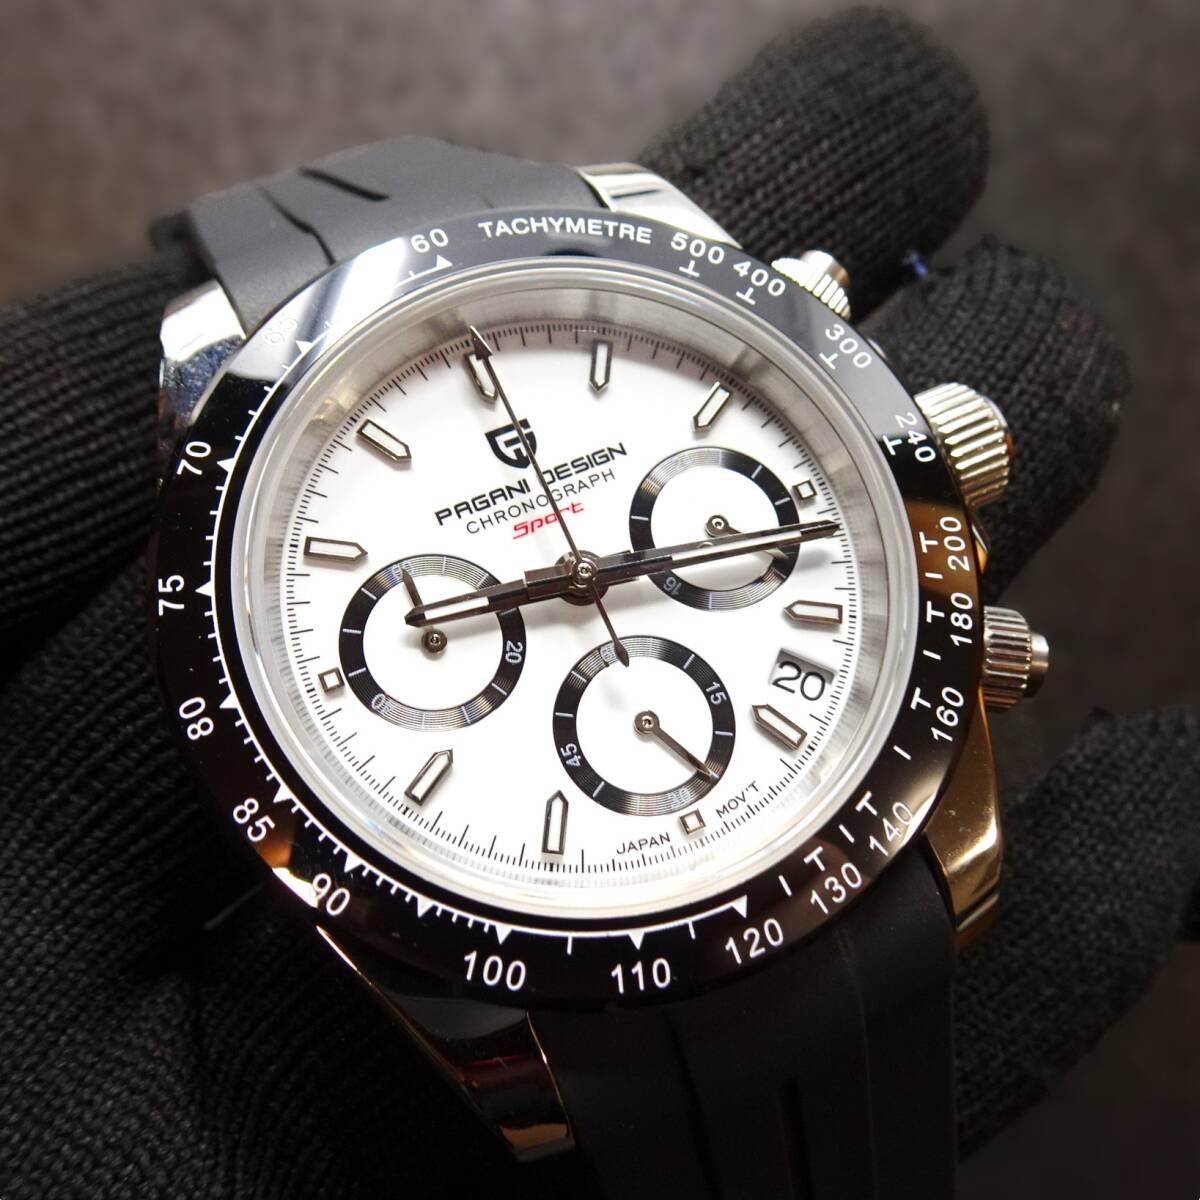 送料無料・新品・パガーニデザイン・メンズ・セイコー製VK63クロノグラフクオーツ式腕時計・オマージュウオッチ・ラバーストラップPD-1644 の画像10